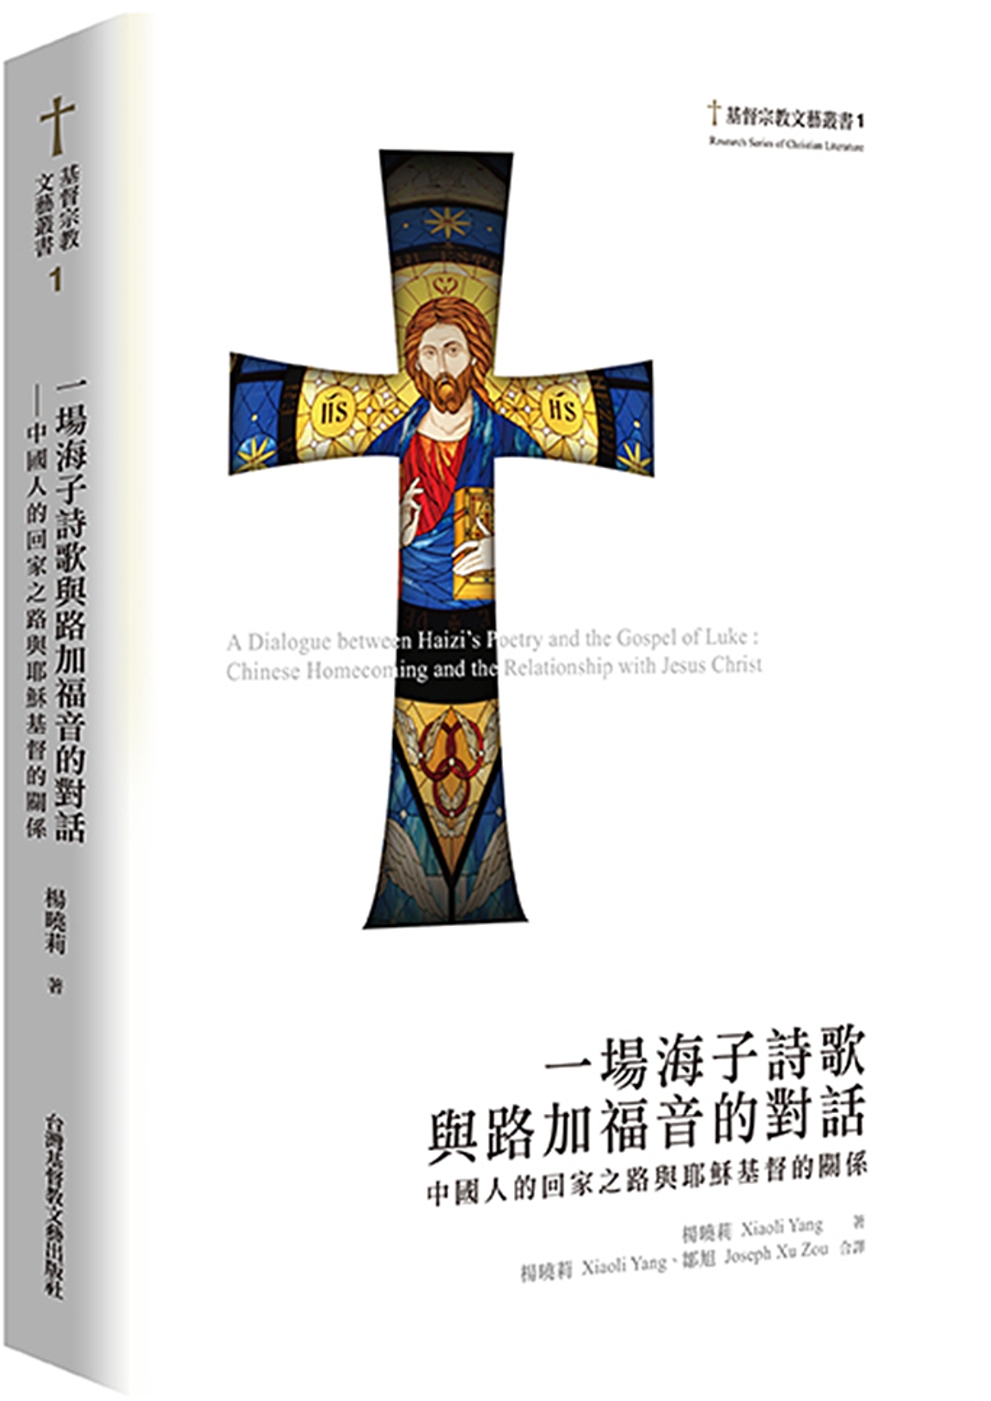 一場海子詩歌與路加福音的對話：中國人的回家之路與耶穌基督的關係